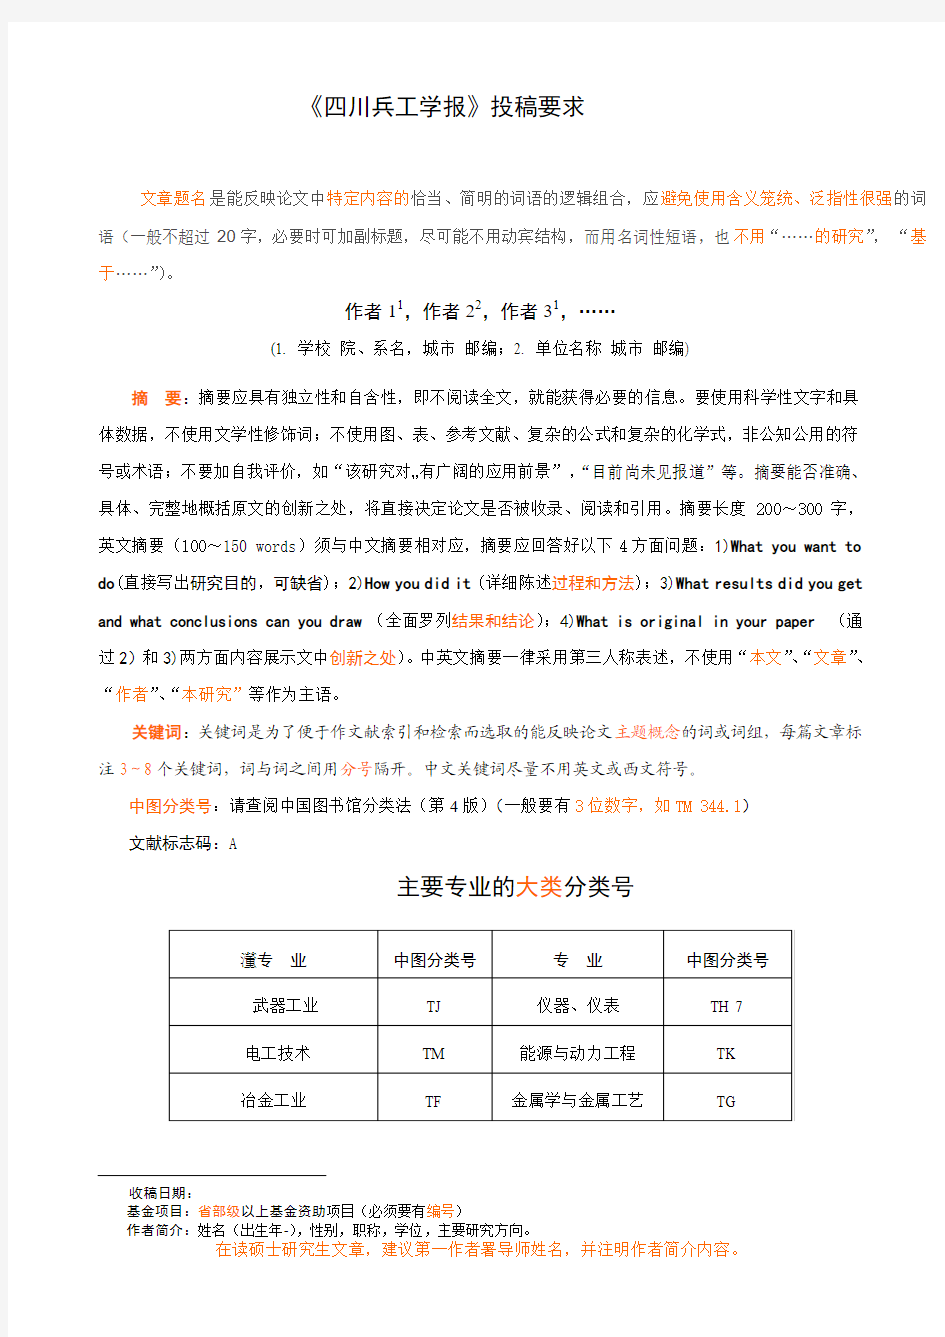 重庆大学学报(自然科学版)投稿新要求